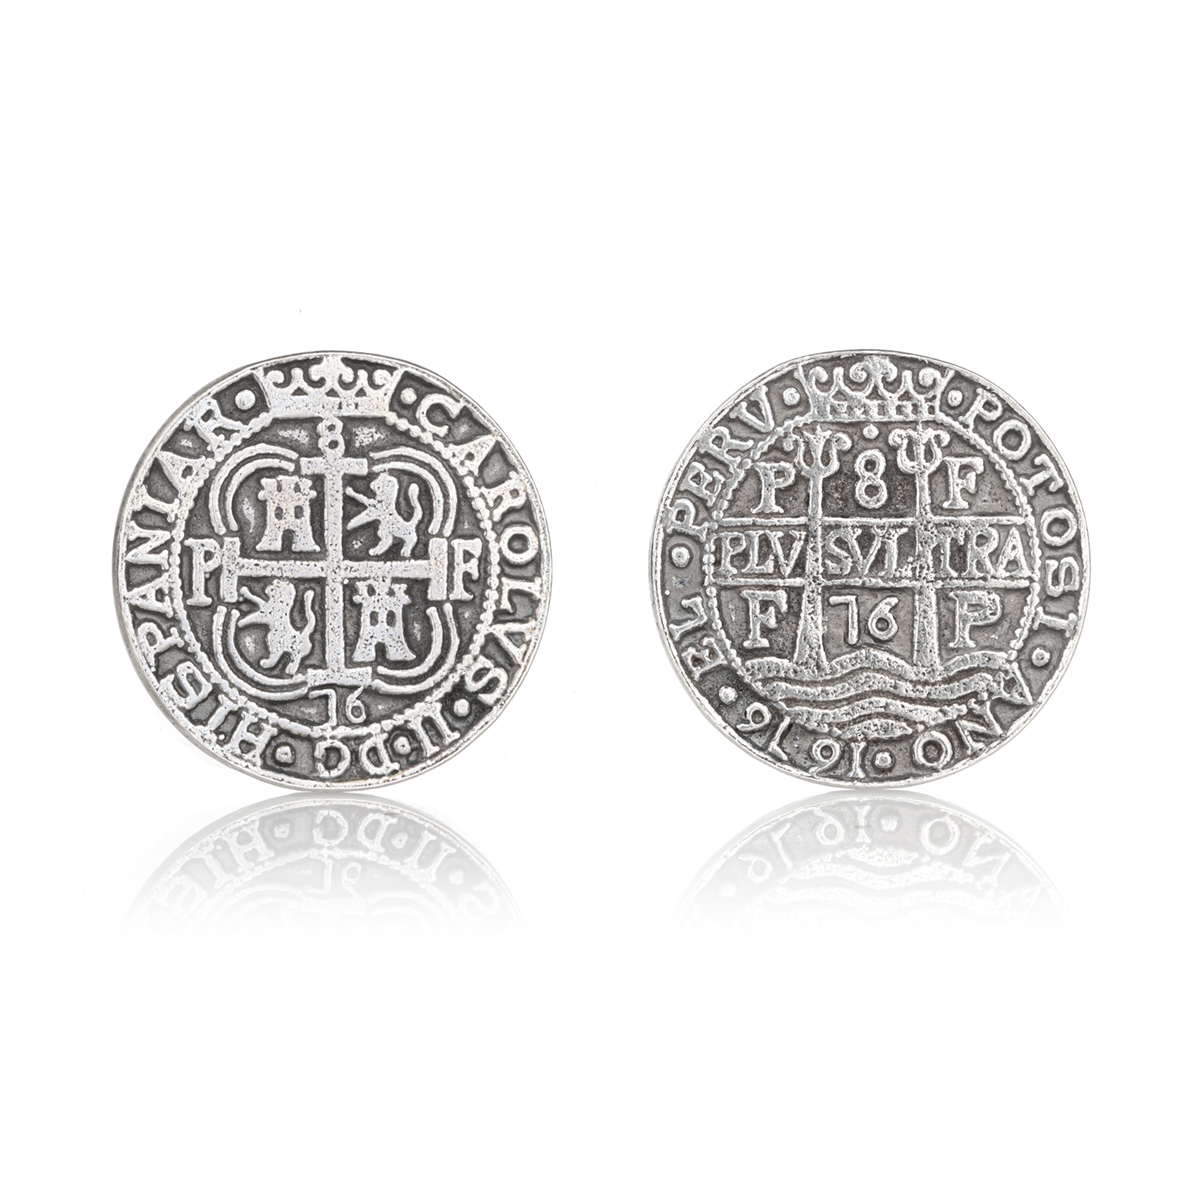 Piratenmünzen Repliken aus Metall (Zinn) - 5 Stück - Piratenschatz Made in England